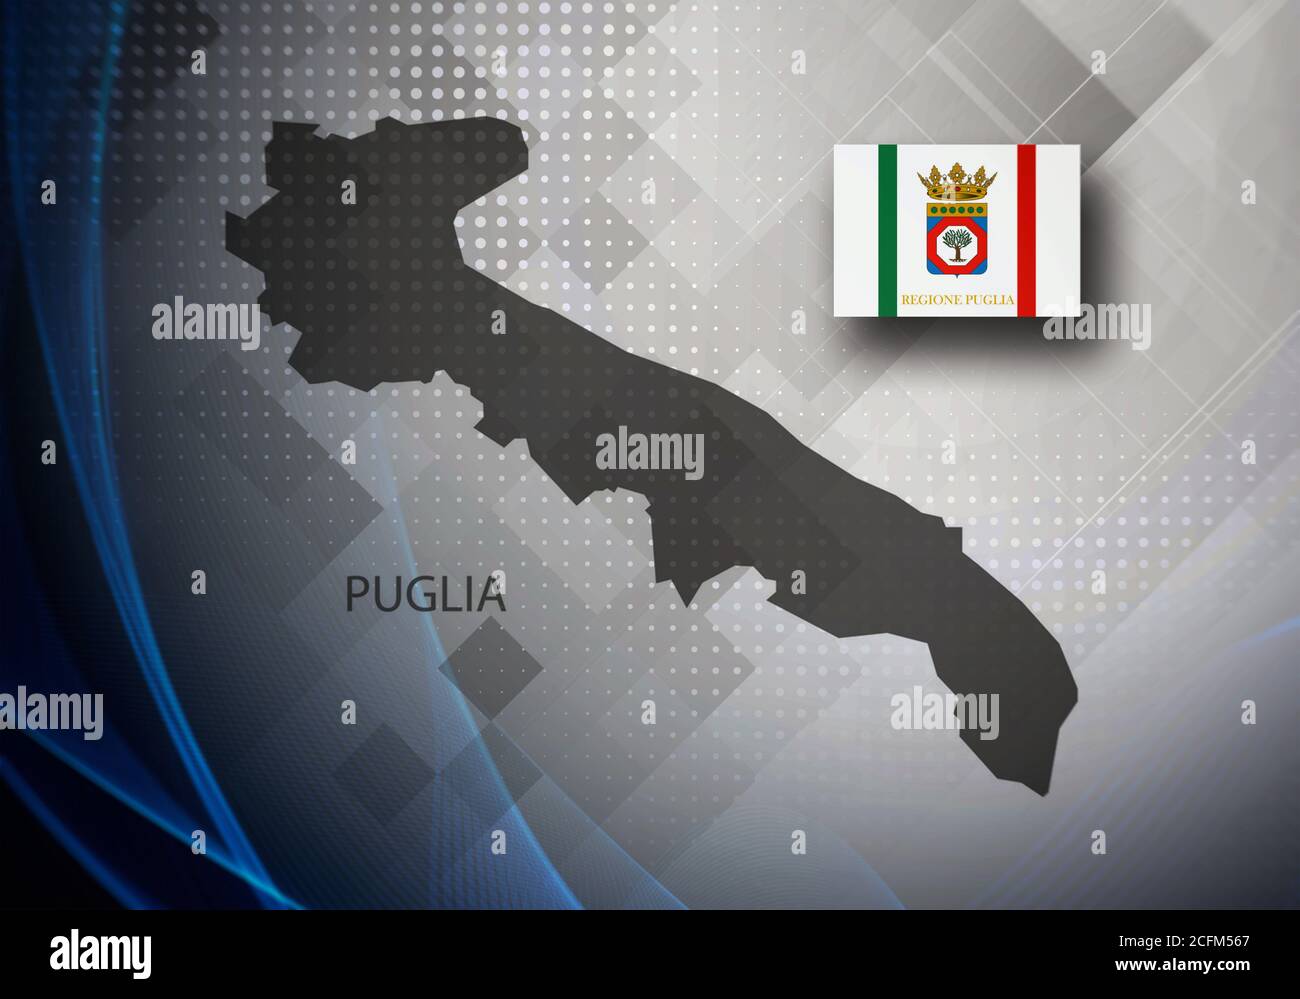 Mappa e bandiera della Puglia (Puglia), regione d'Italia, illustrazione in 3D Foto Stock